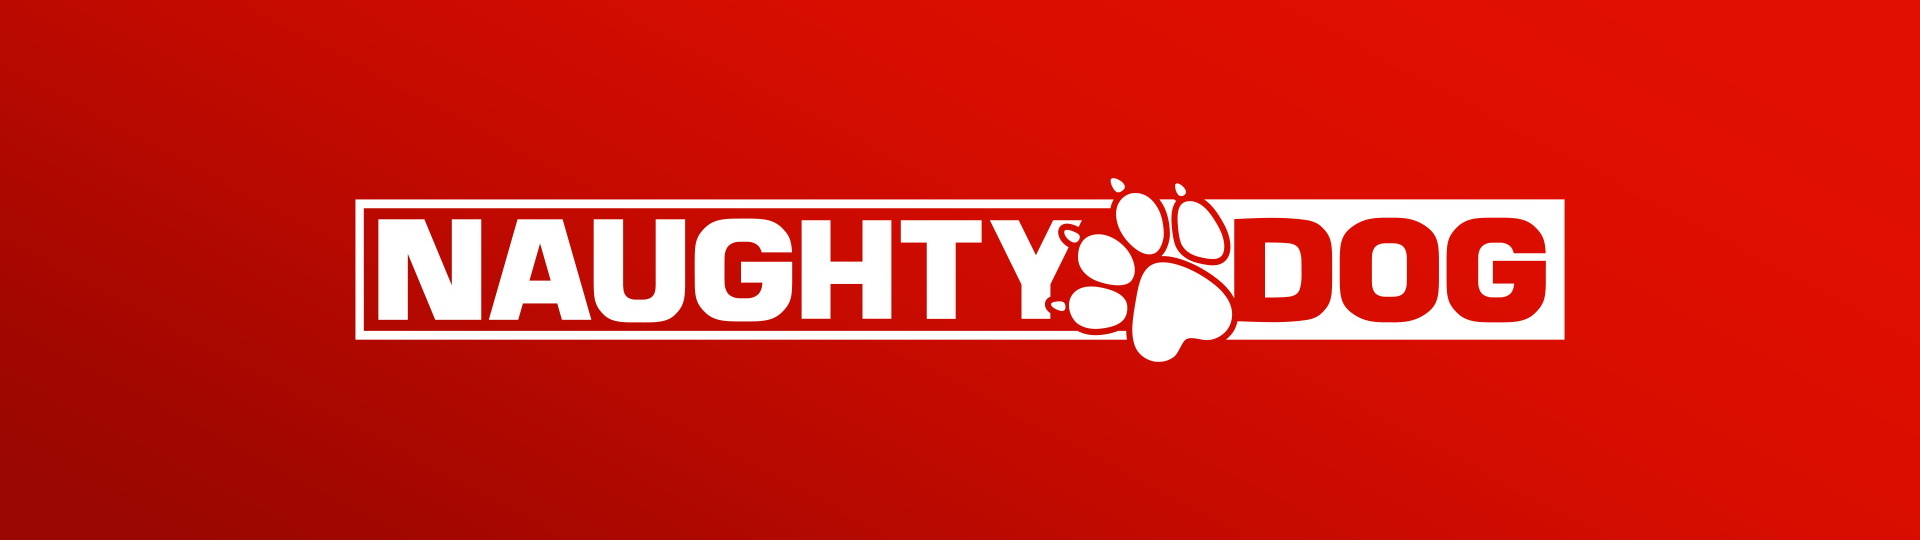 Naughty Dogs mají v přípravě několik projektů | Novinky